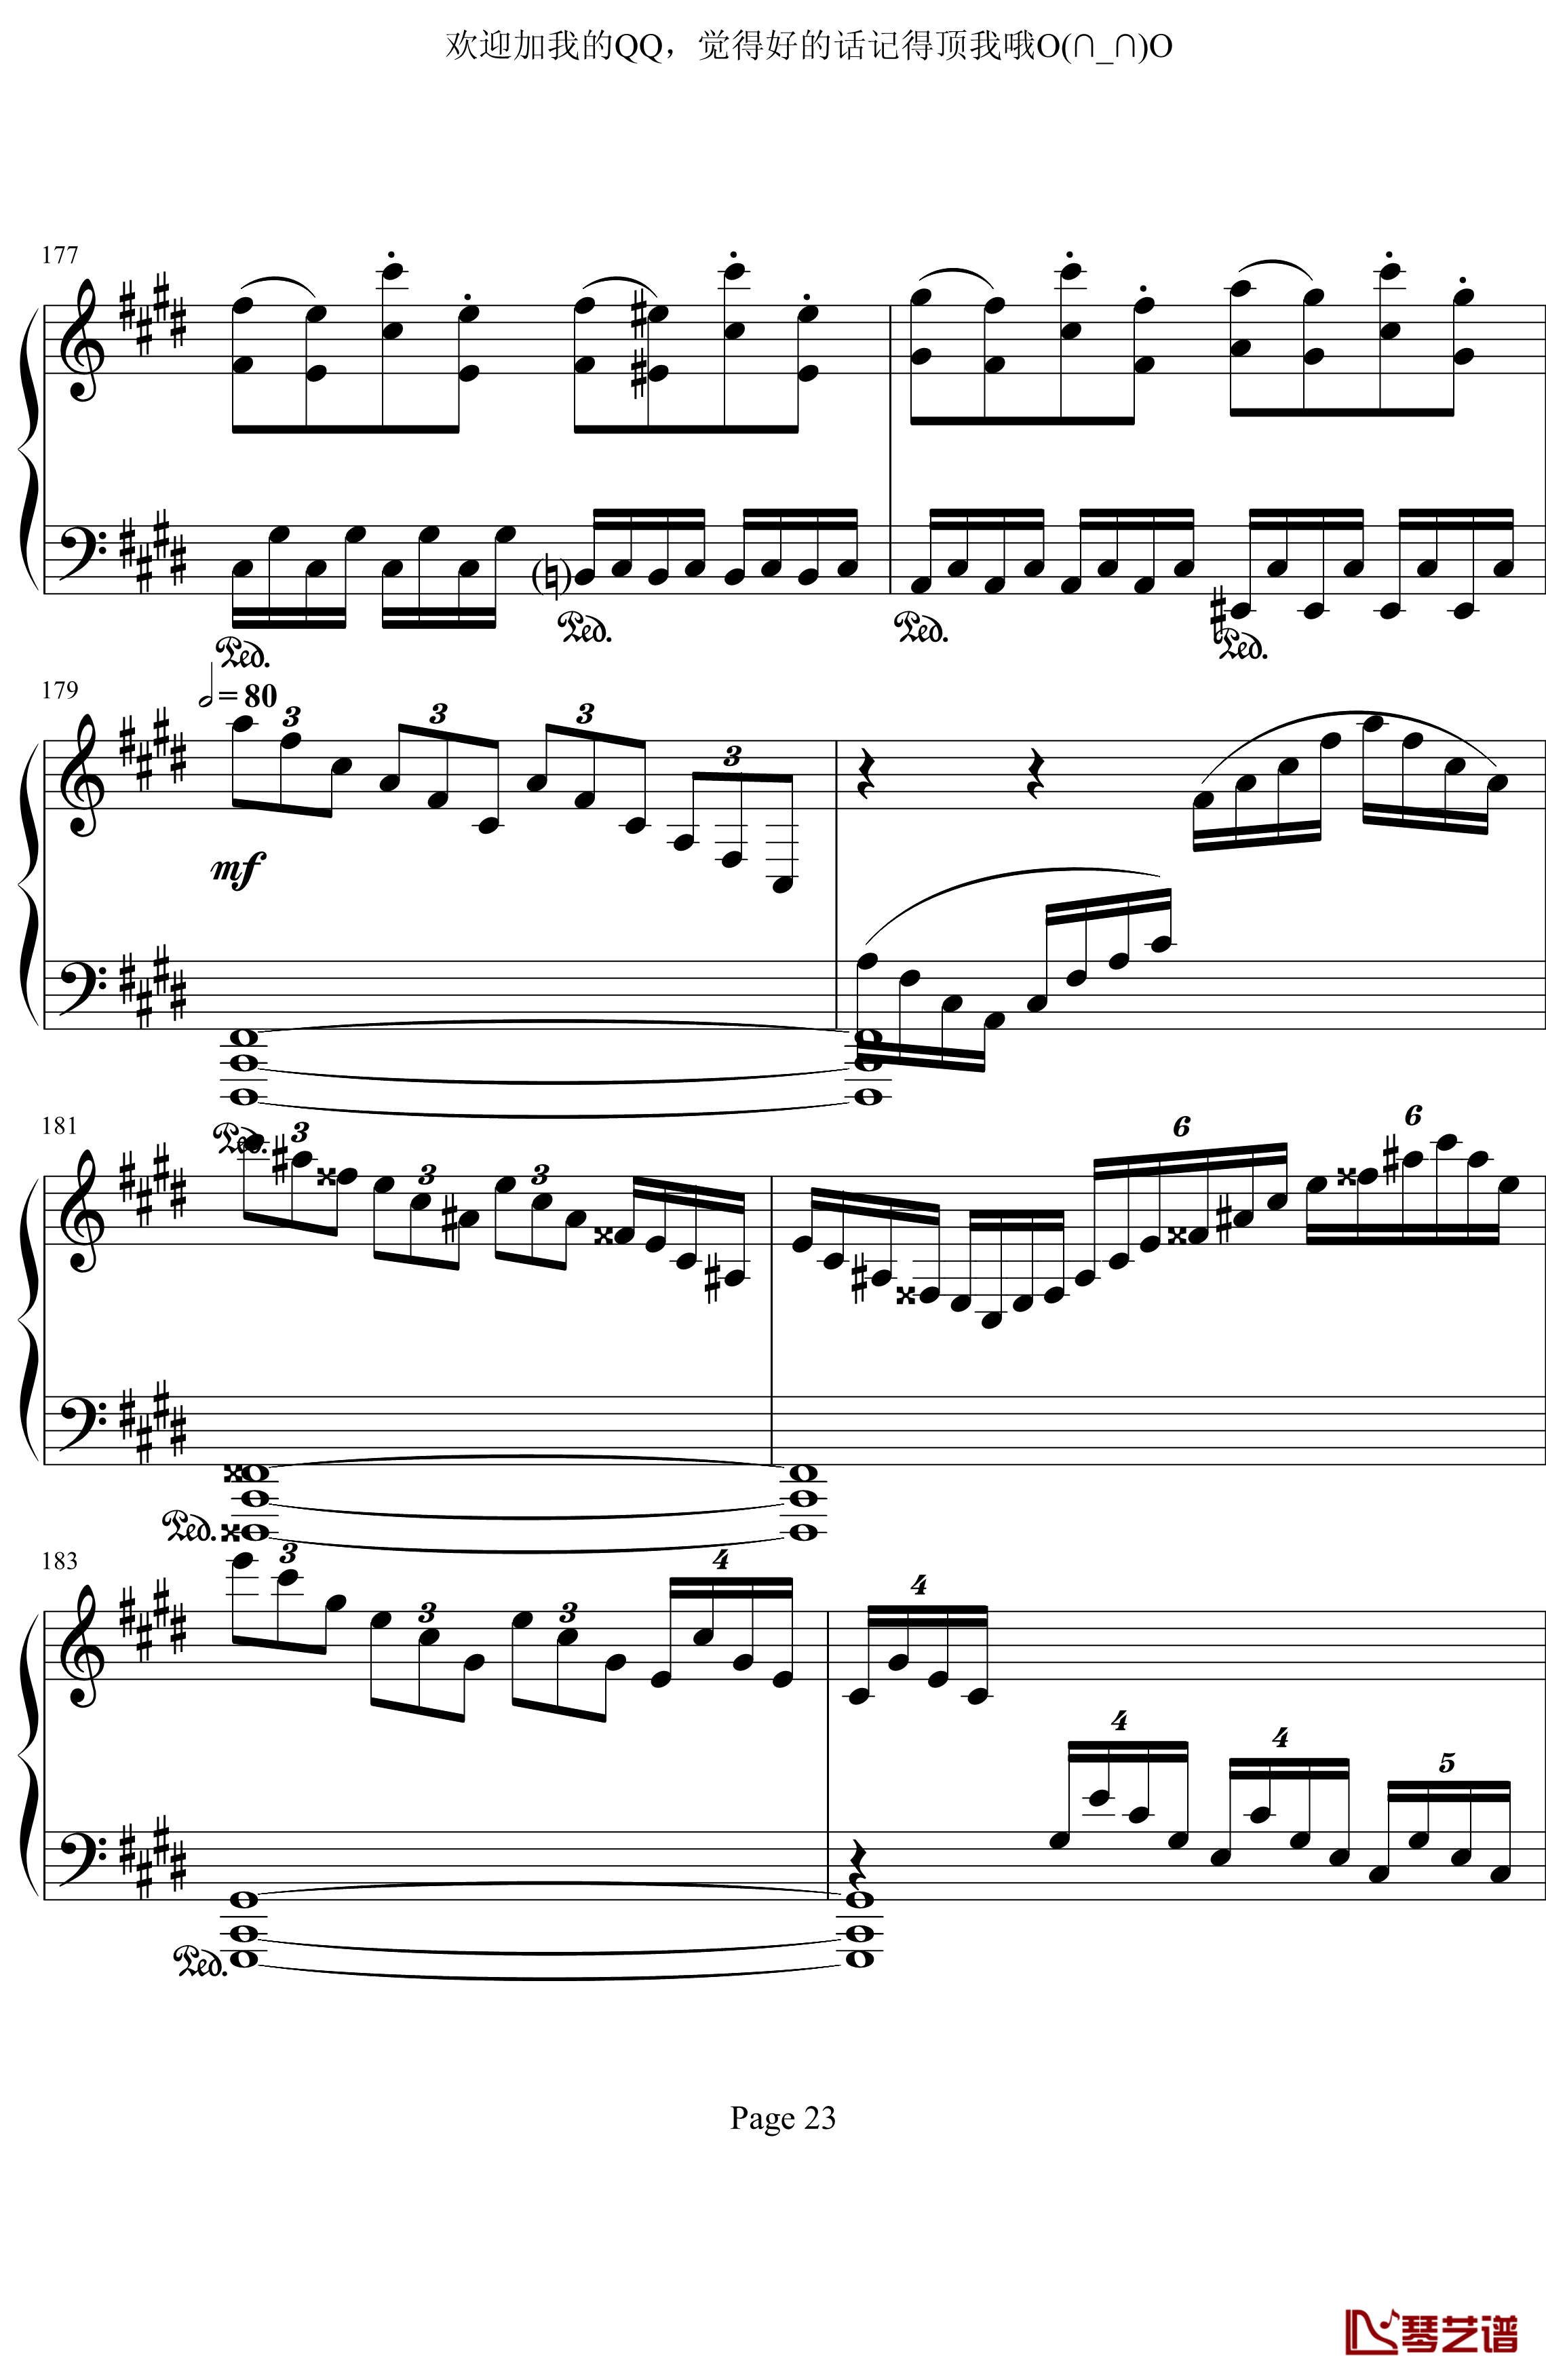 月光奏鸣曲第三乐章钢琴谱-贝多芬-beethoven23